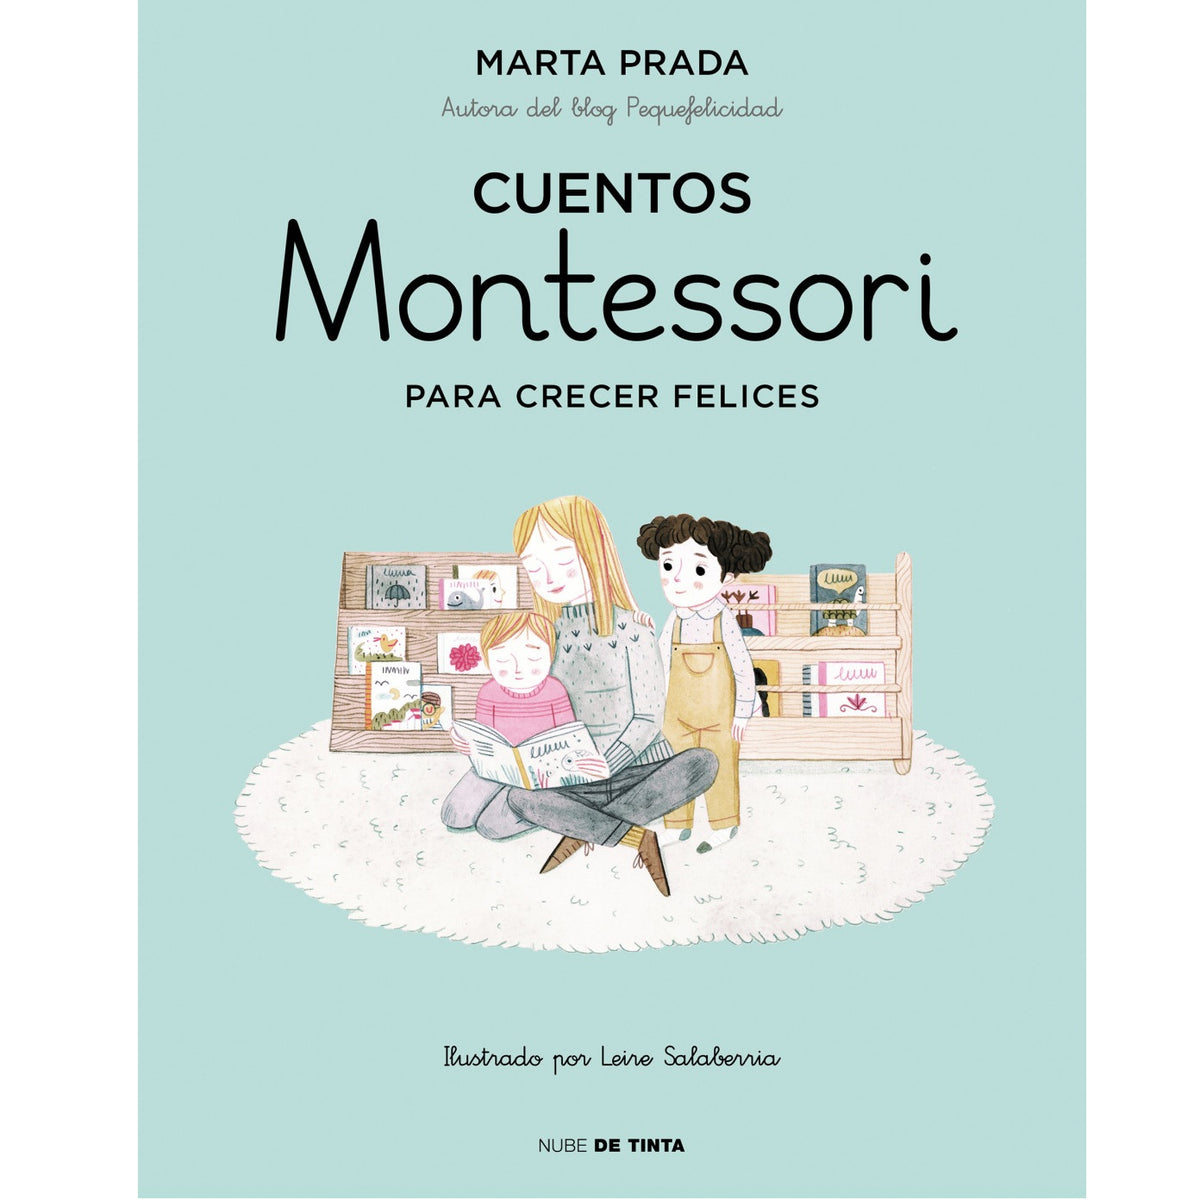 Libro De Actividades Montessori Niños De 2 5 Años, Ac